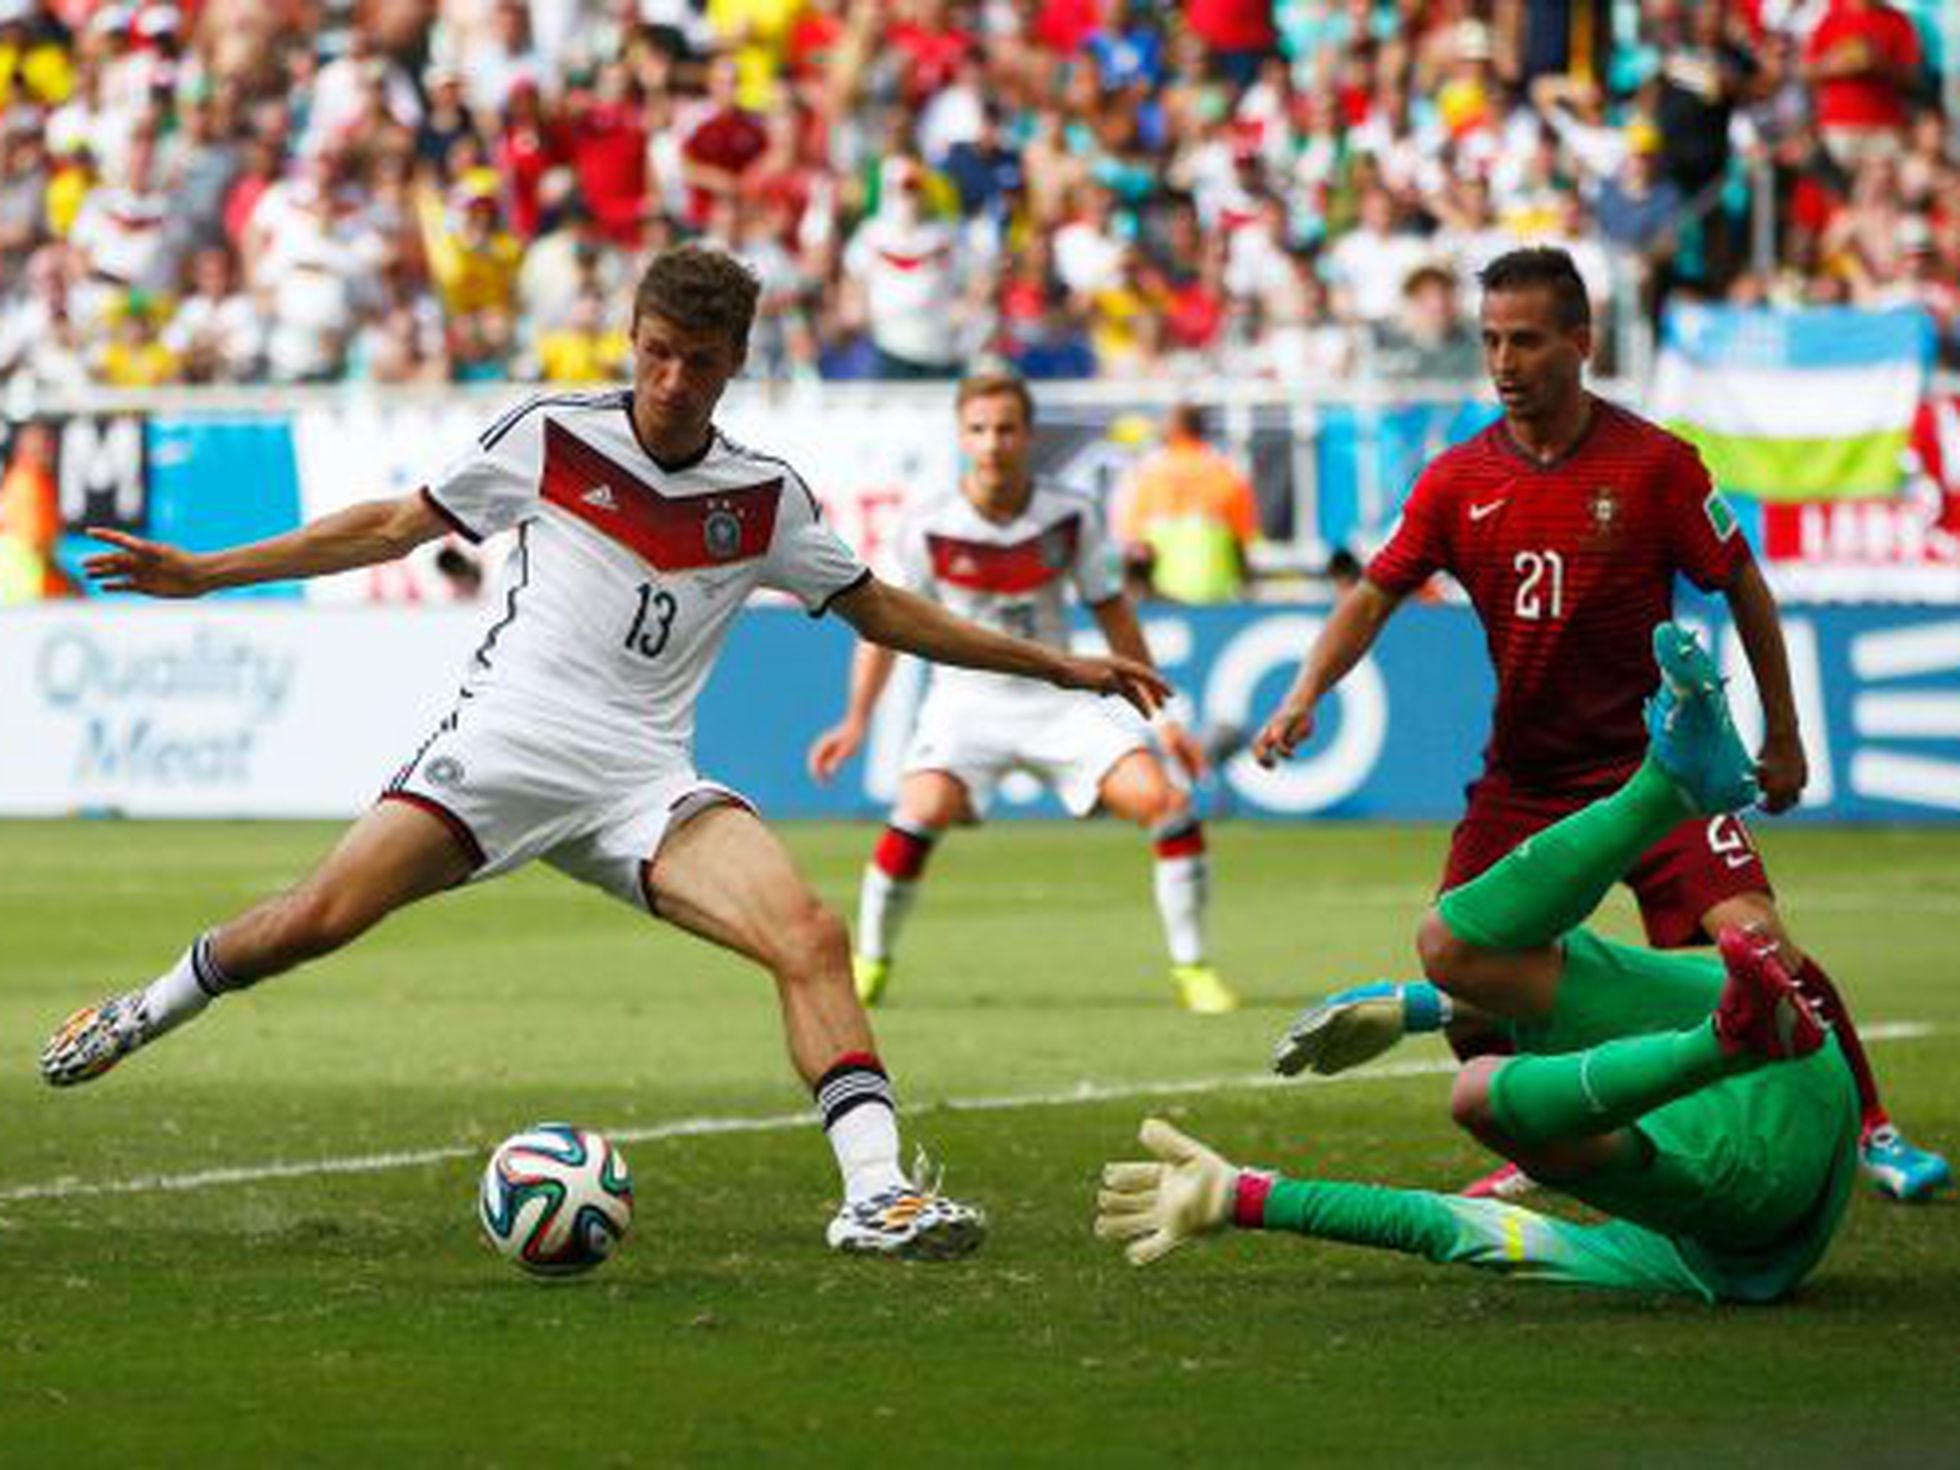 Alemanha x Portugal: Copa do Mundo 2014 - Estádio Fonte Nova -  segunda-feira 16-06-2014 - Guia da Semana